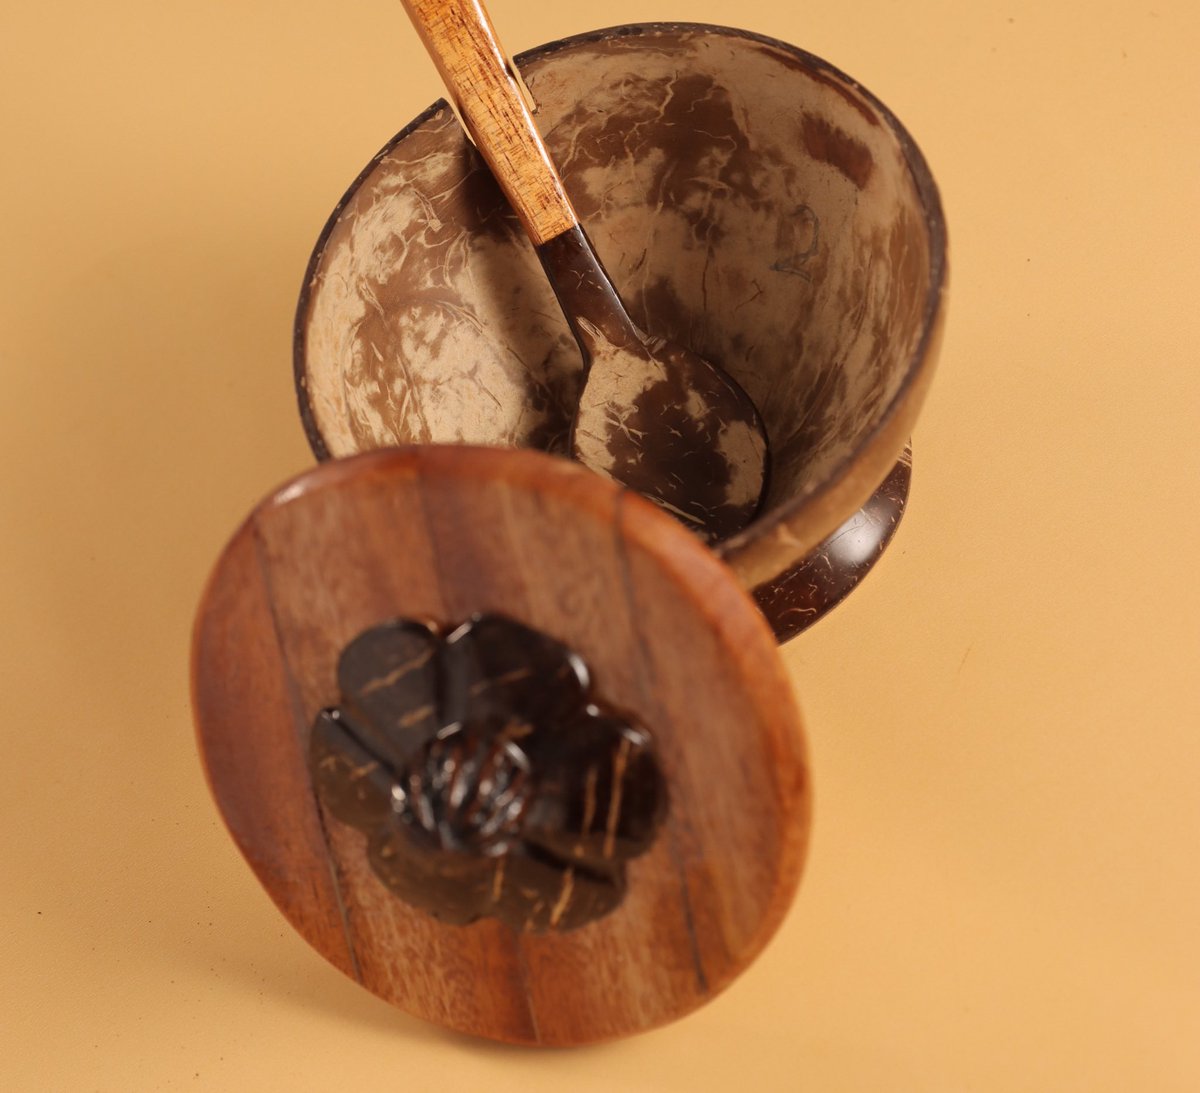 ¿Qué uso le darías a esta pieza en jícara de coco? 🥥 #ManosDominicanas #HechoEnRD #Supérate